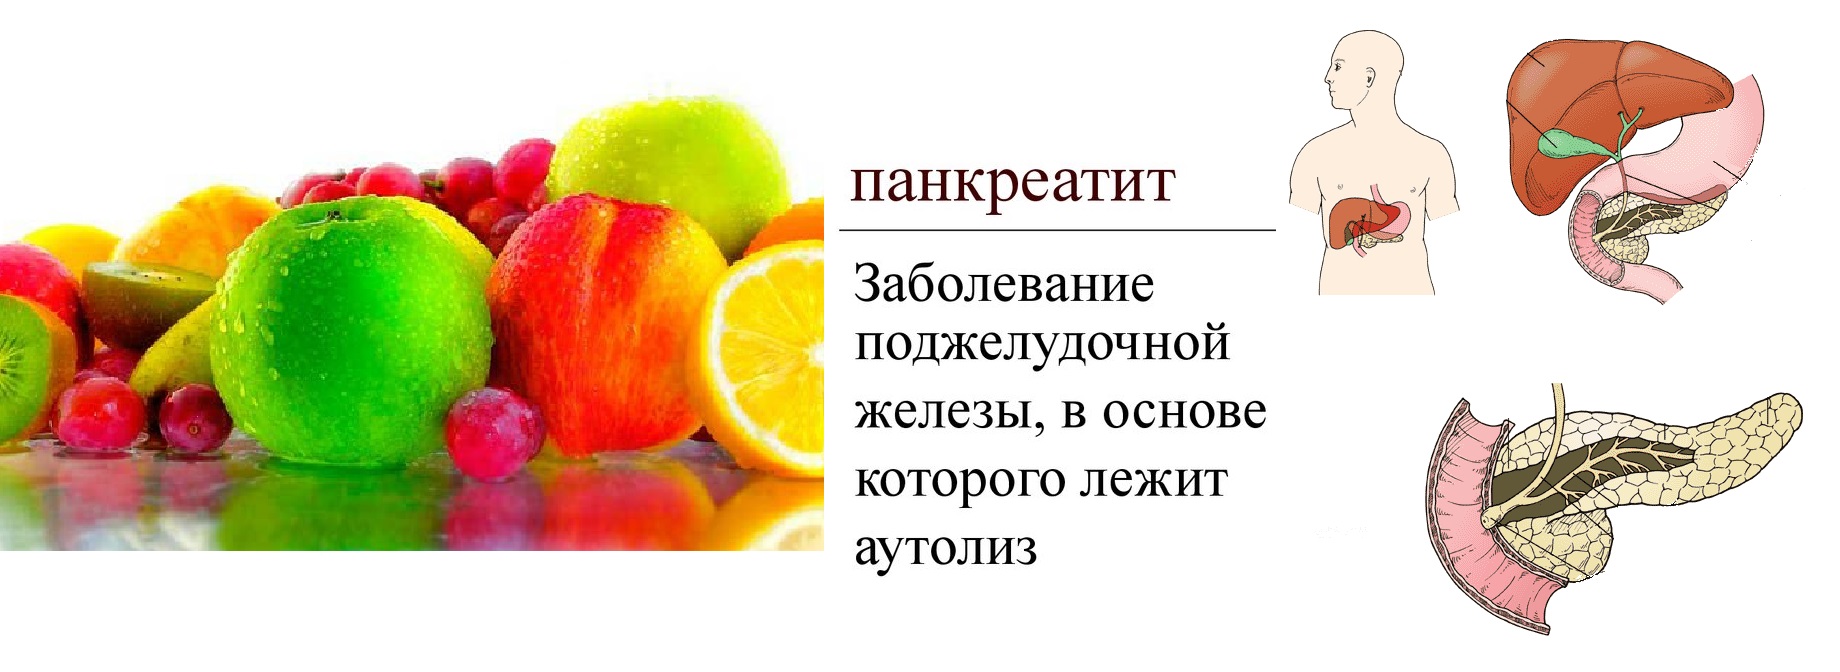 Какие ягоды при панкреатите. Панкреатит фрукты. Кушать фрукты при панкреатите. Фрукты для поджелудочной железы. Разрешенные фрукты при панкреатите.